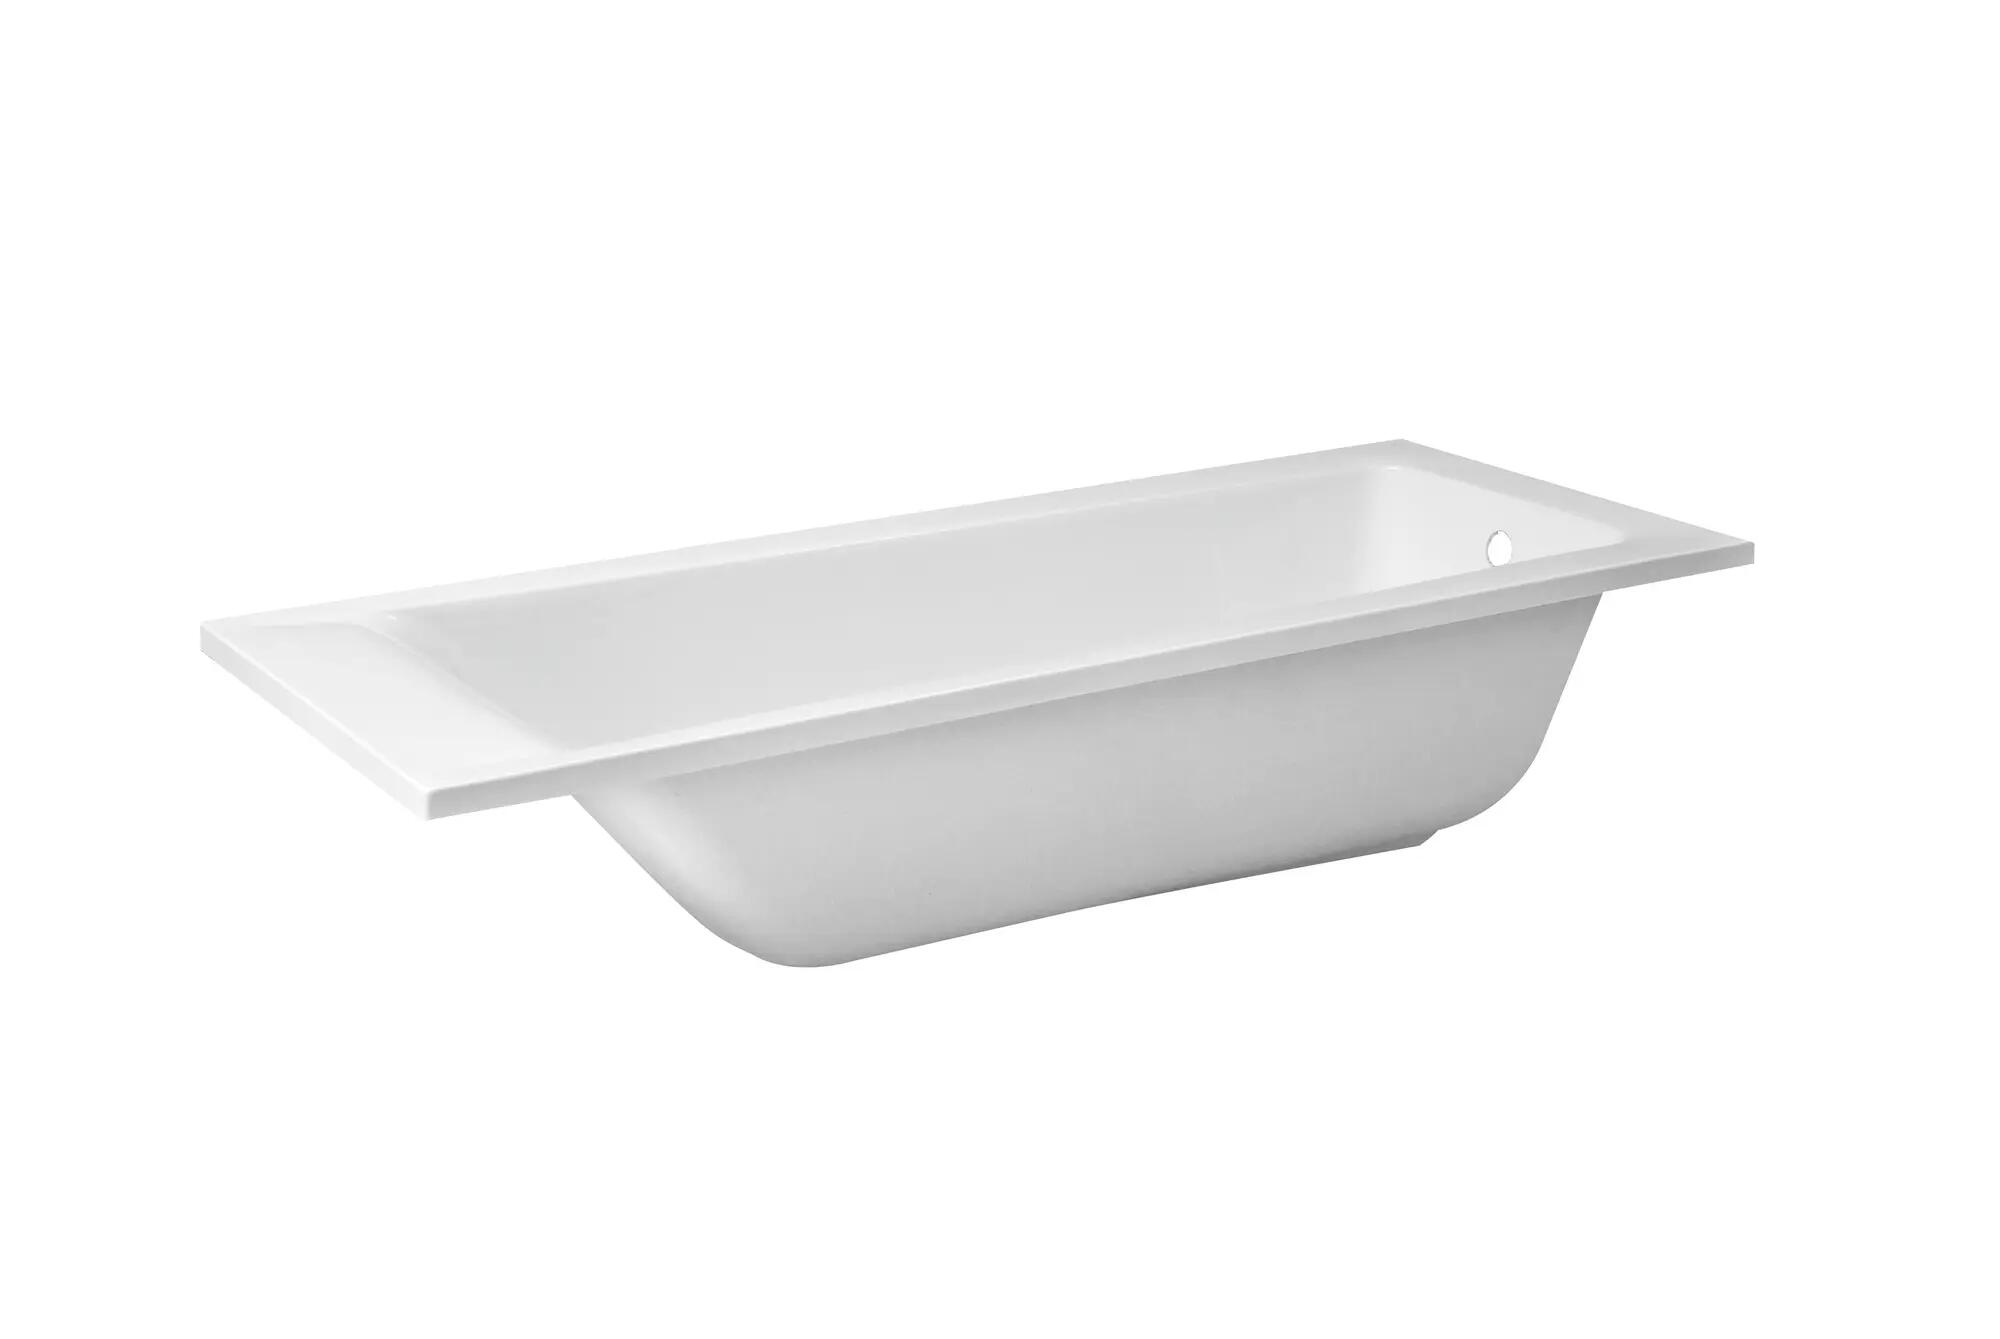 Baignoire rectangulaire L.160x l.70 cm blanc, SENSEA Access design | Leroy Merlin